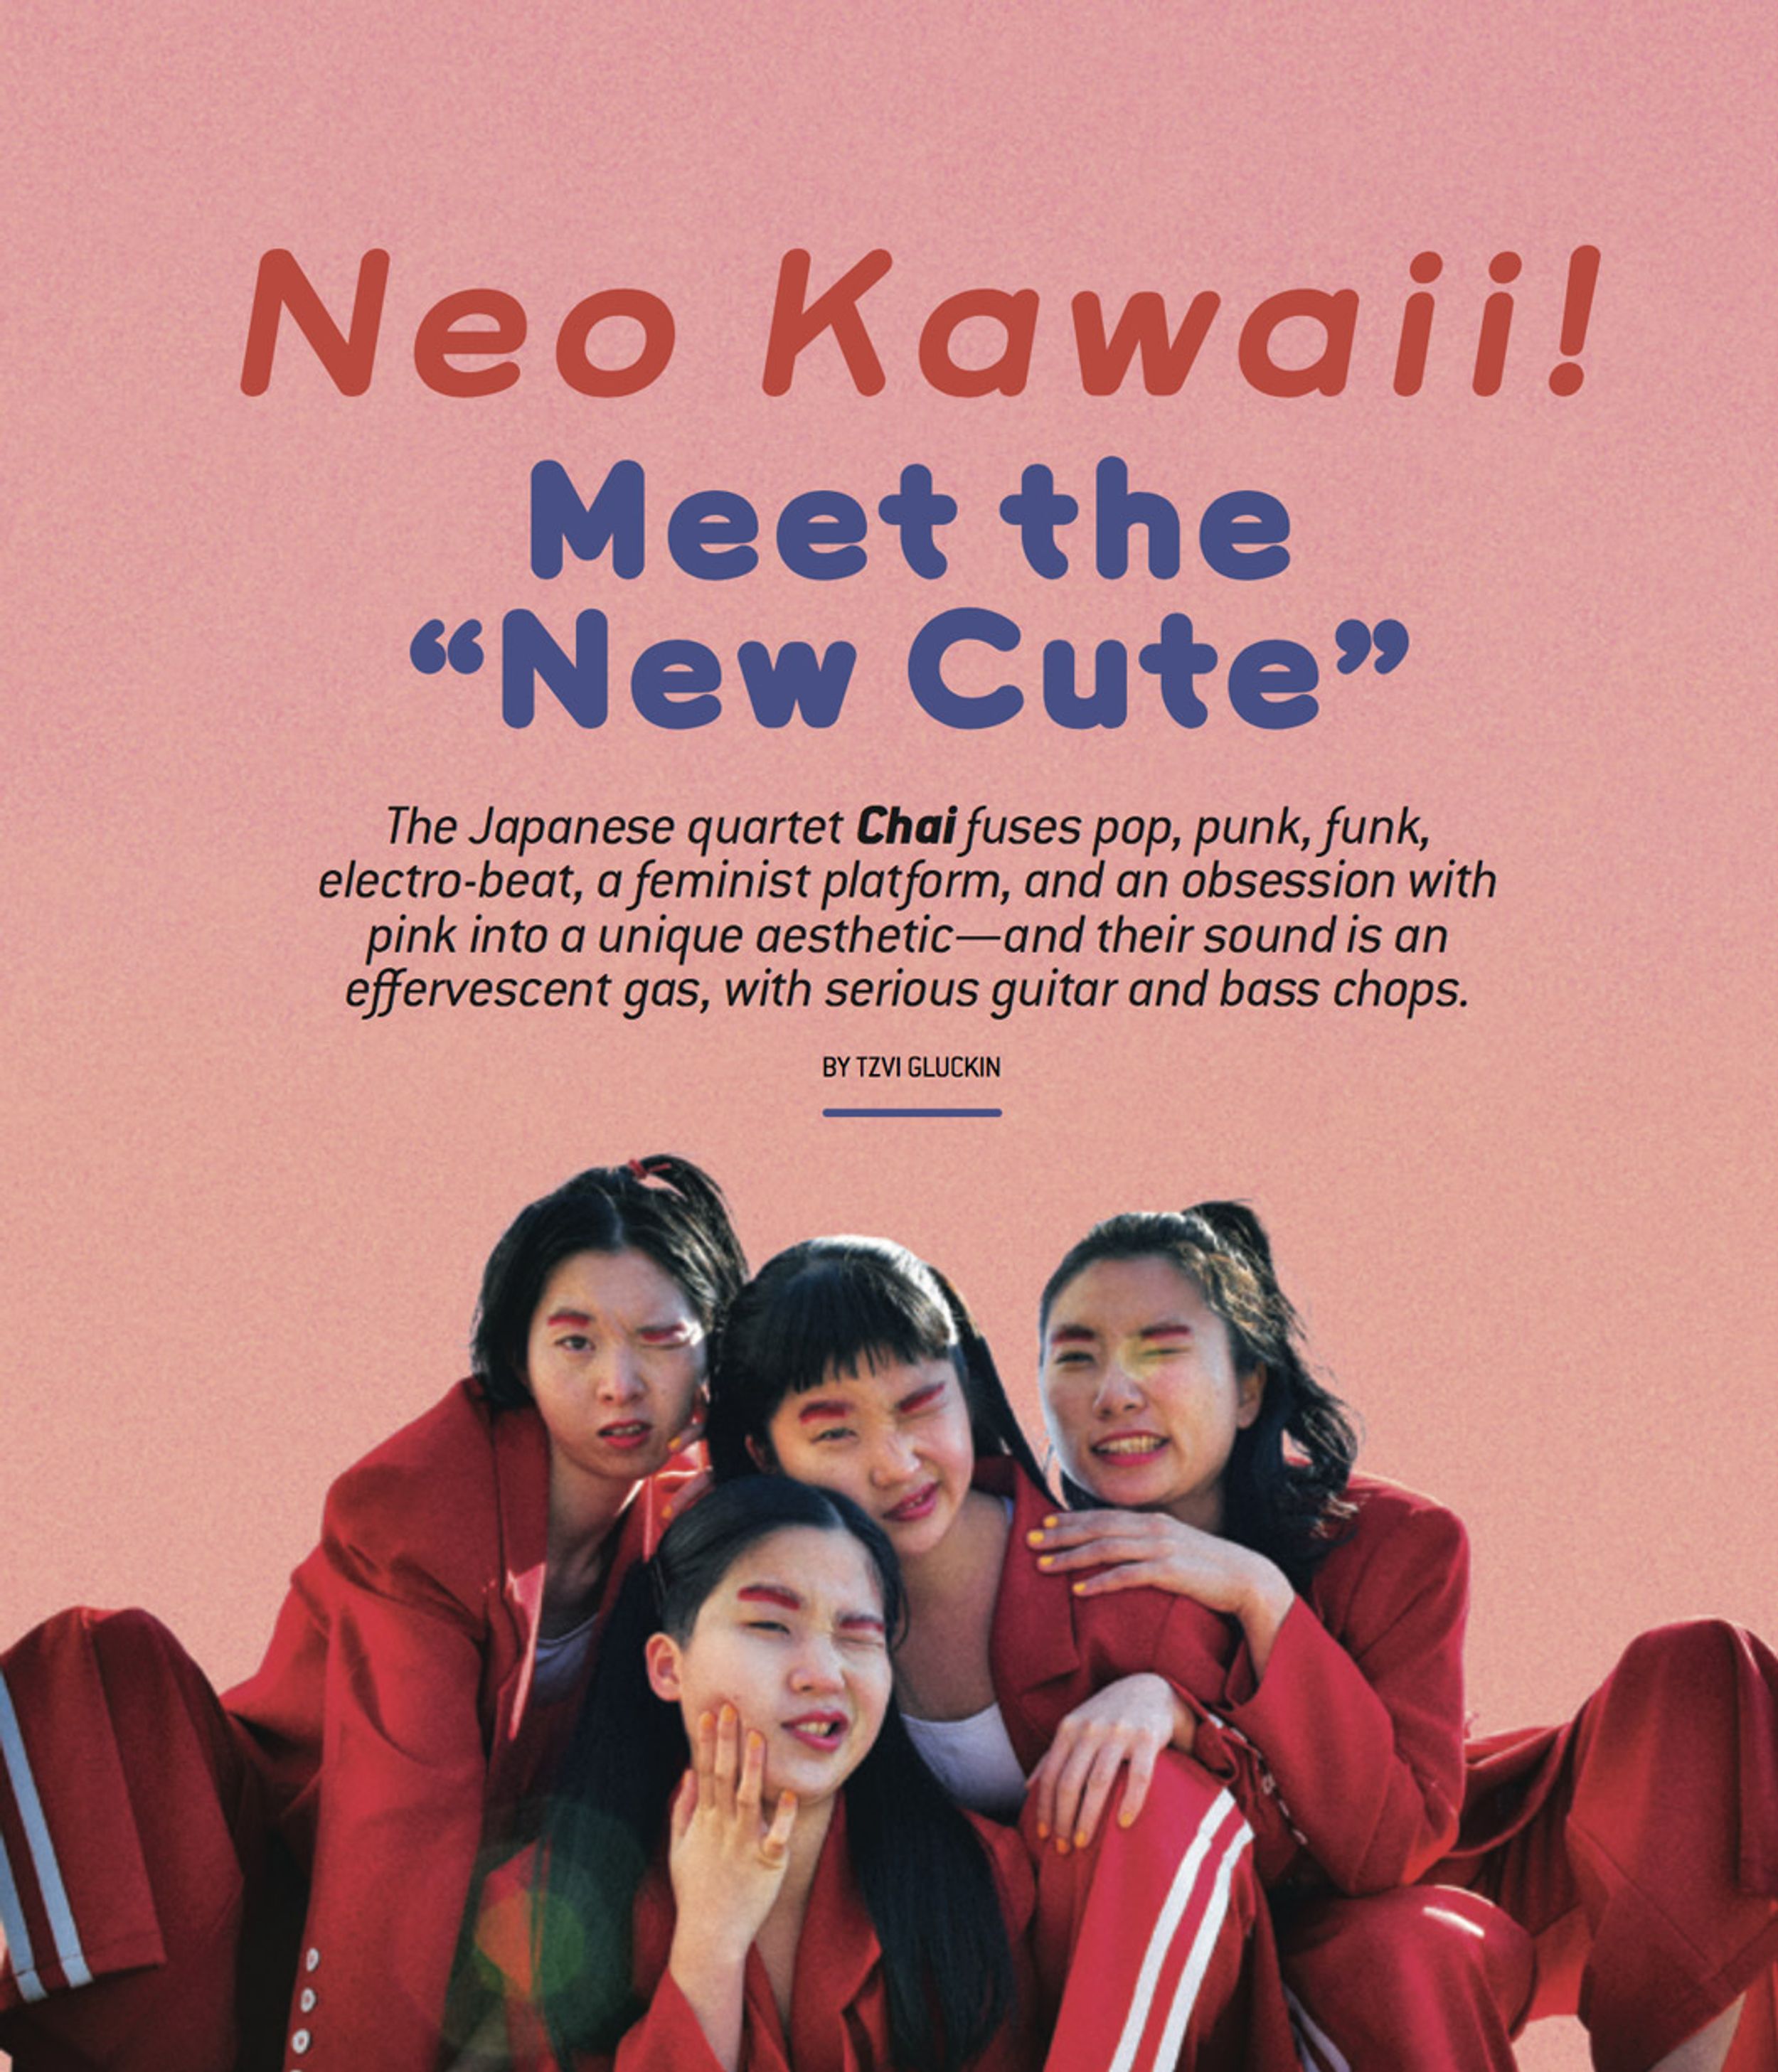 Japan’s Chai: Meet the “New Cute”